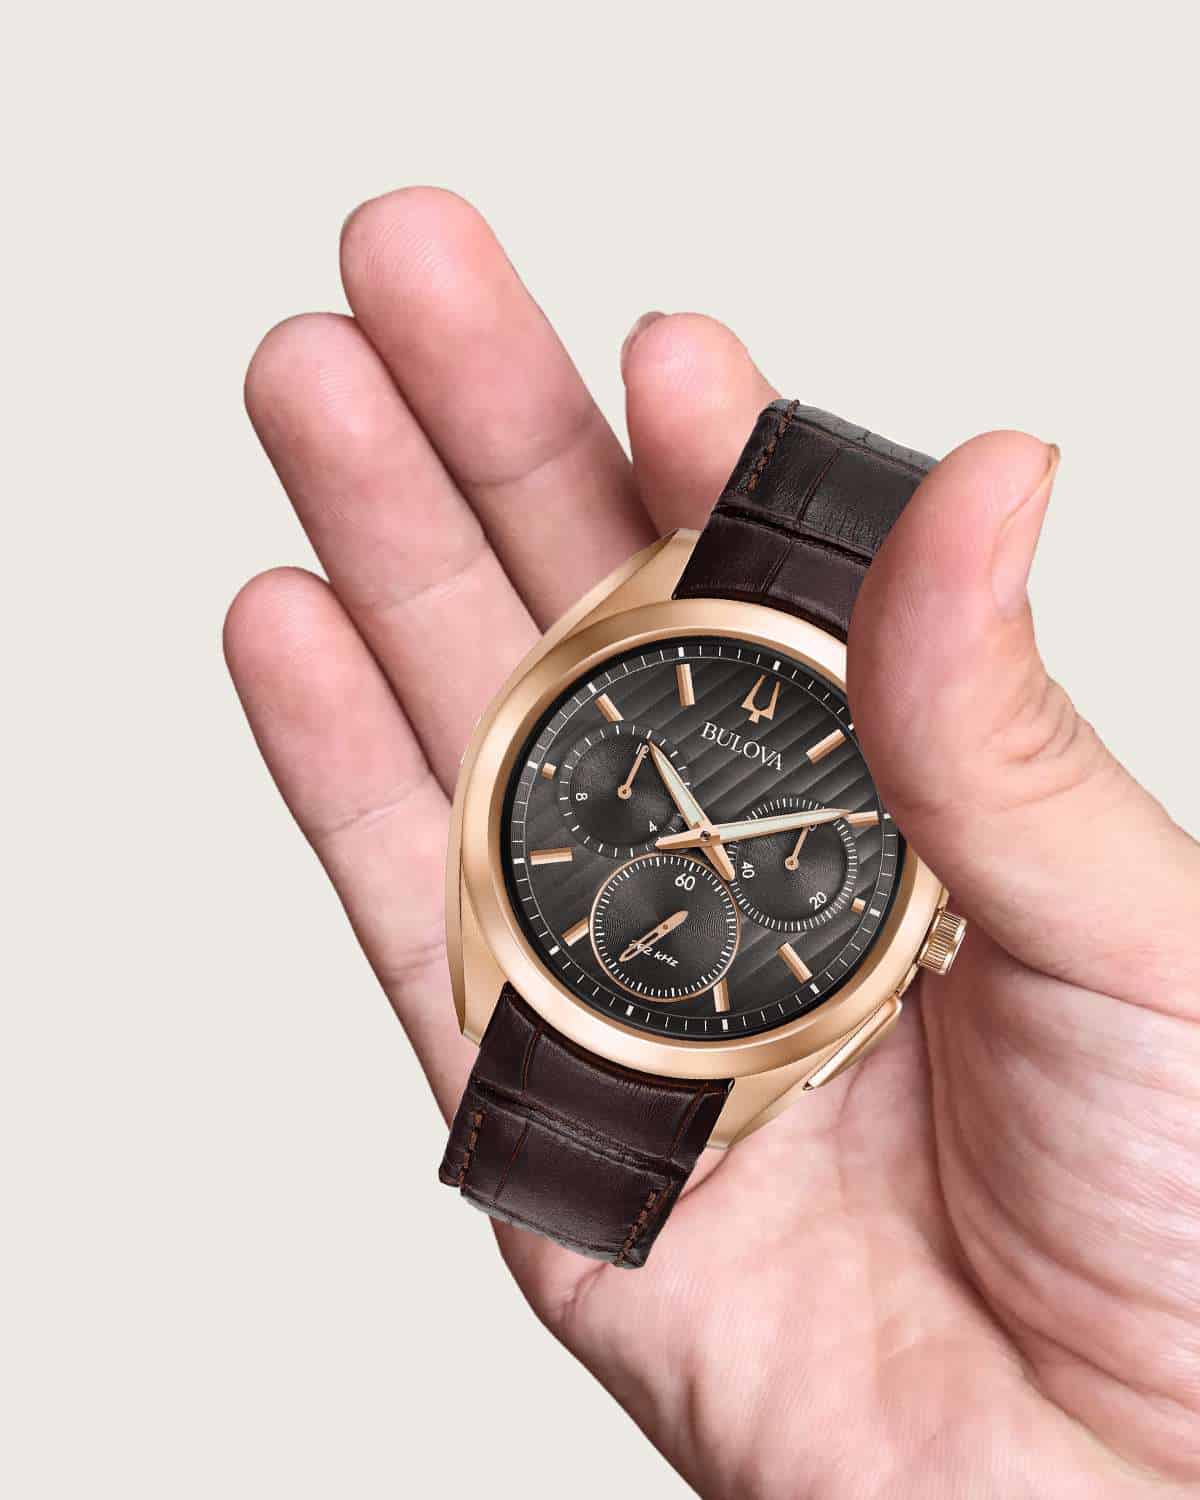 Đồng hồ Bulova chính hãng sử dụng bộ máy chuẩn Swiss made.